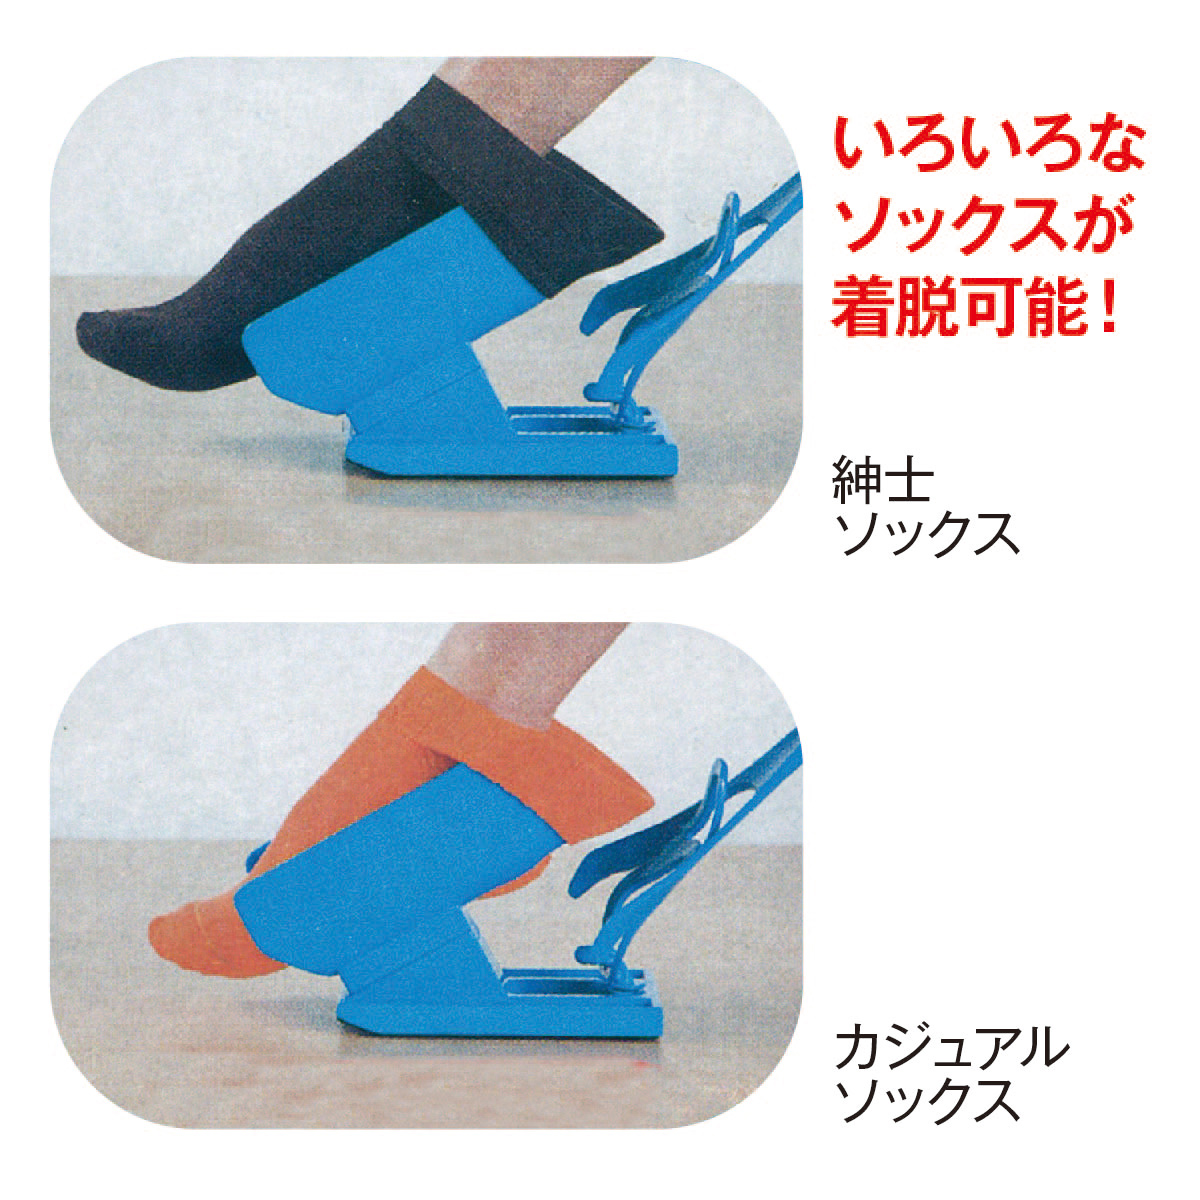 ソックススライダー ソックスエイド 靴下 エイド 履く 補助 靴下補助具 sock-slider